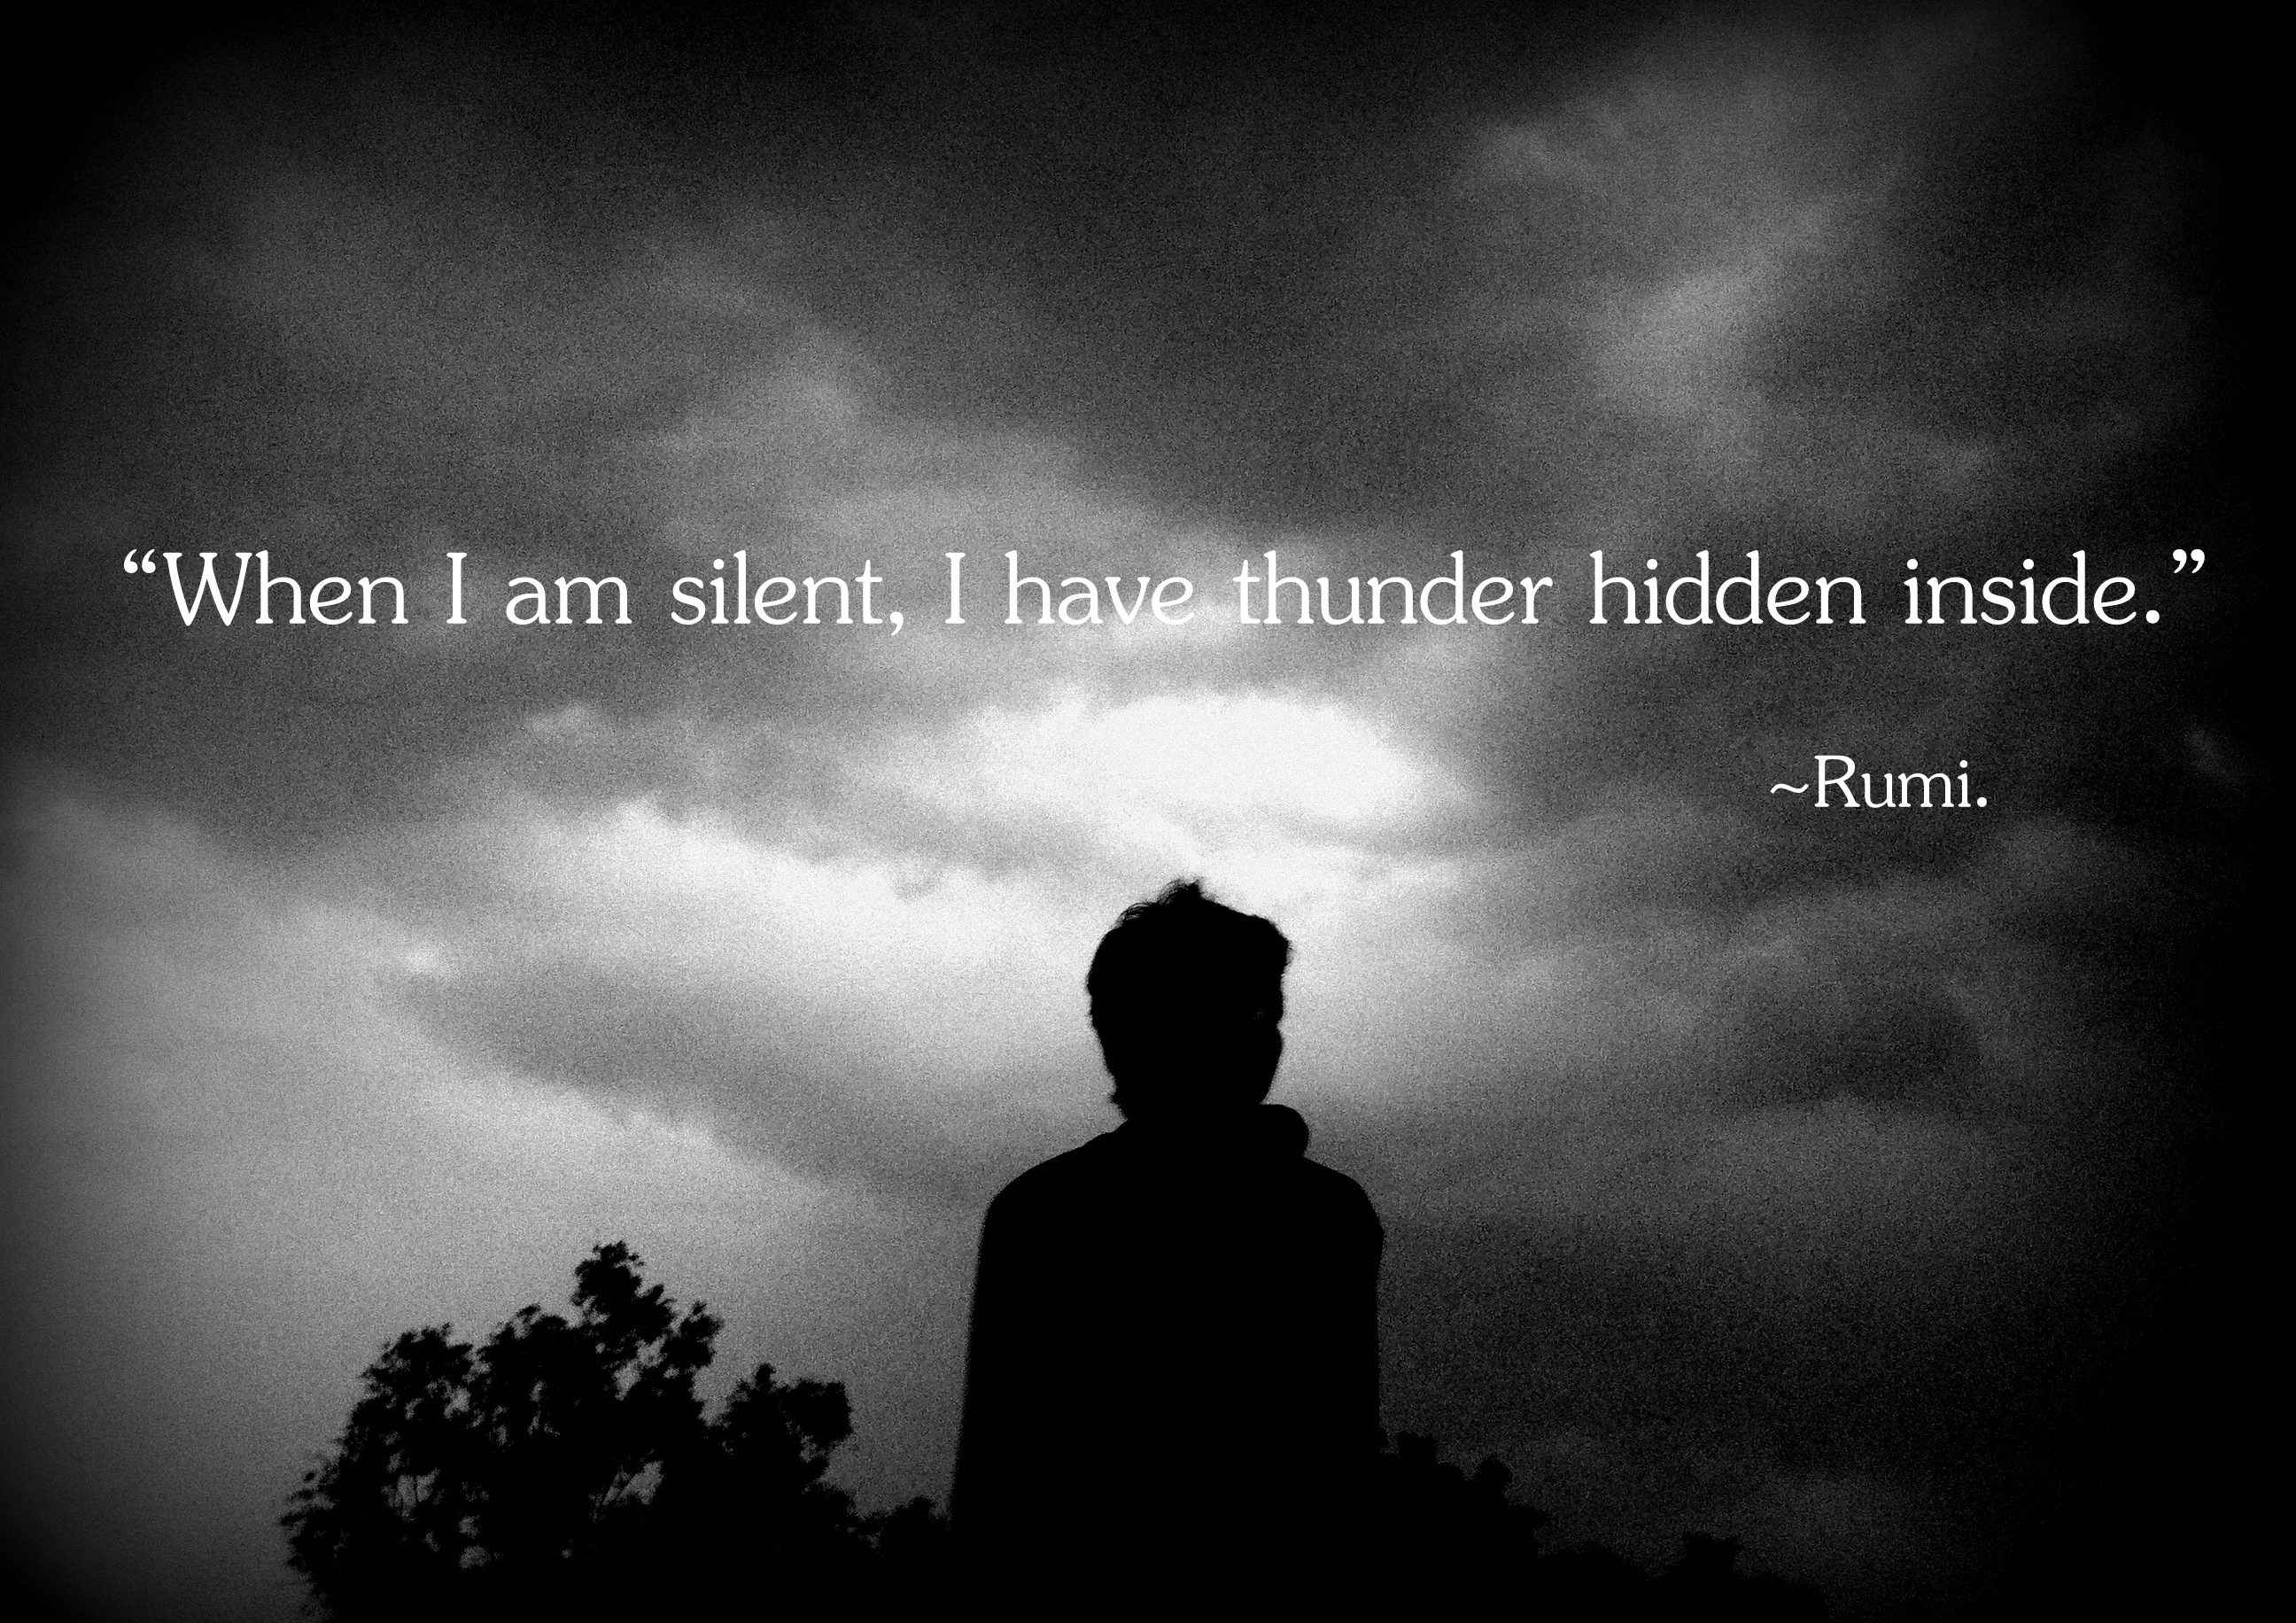 When i am silent, i have thunder hidden inside me.